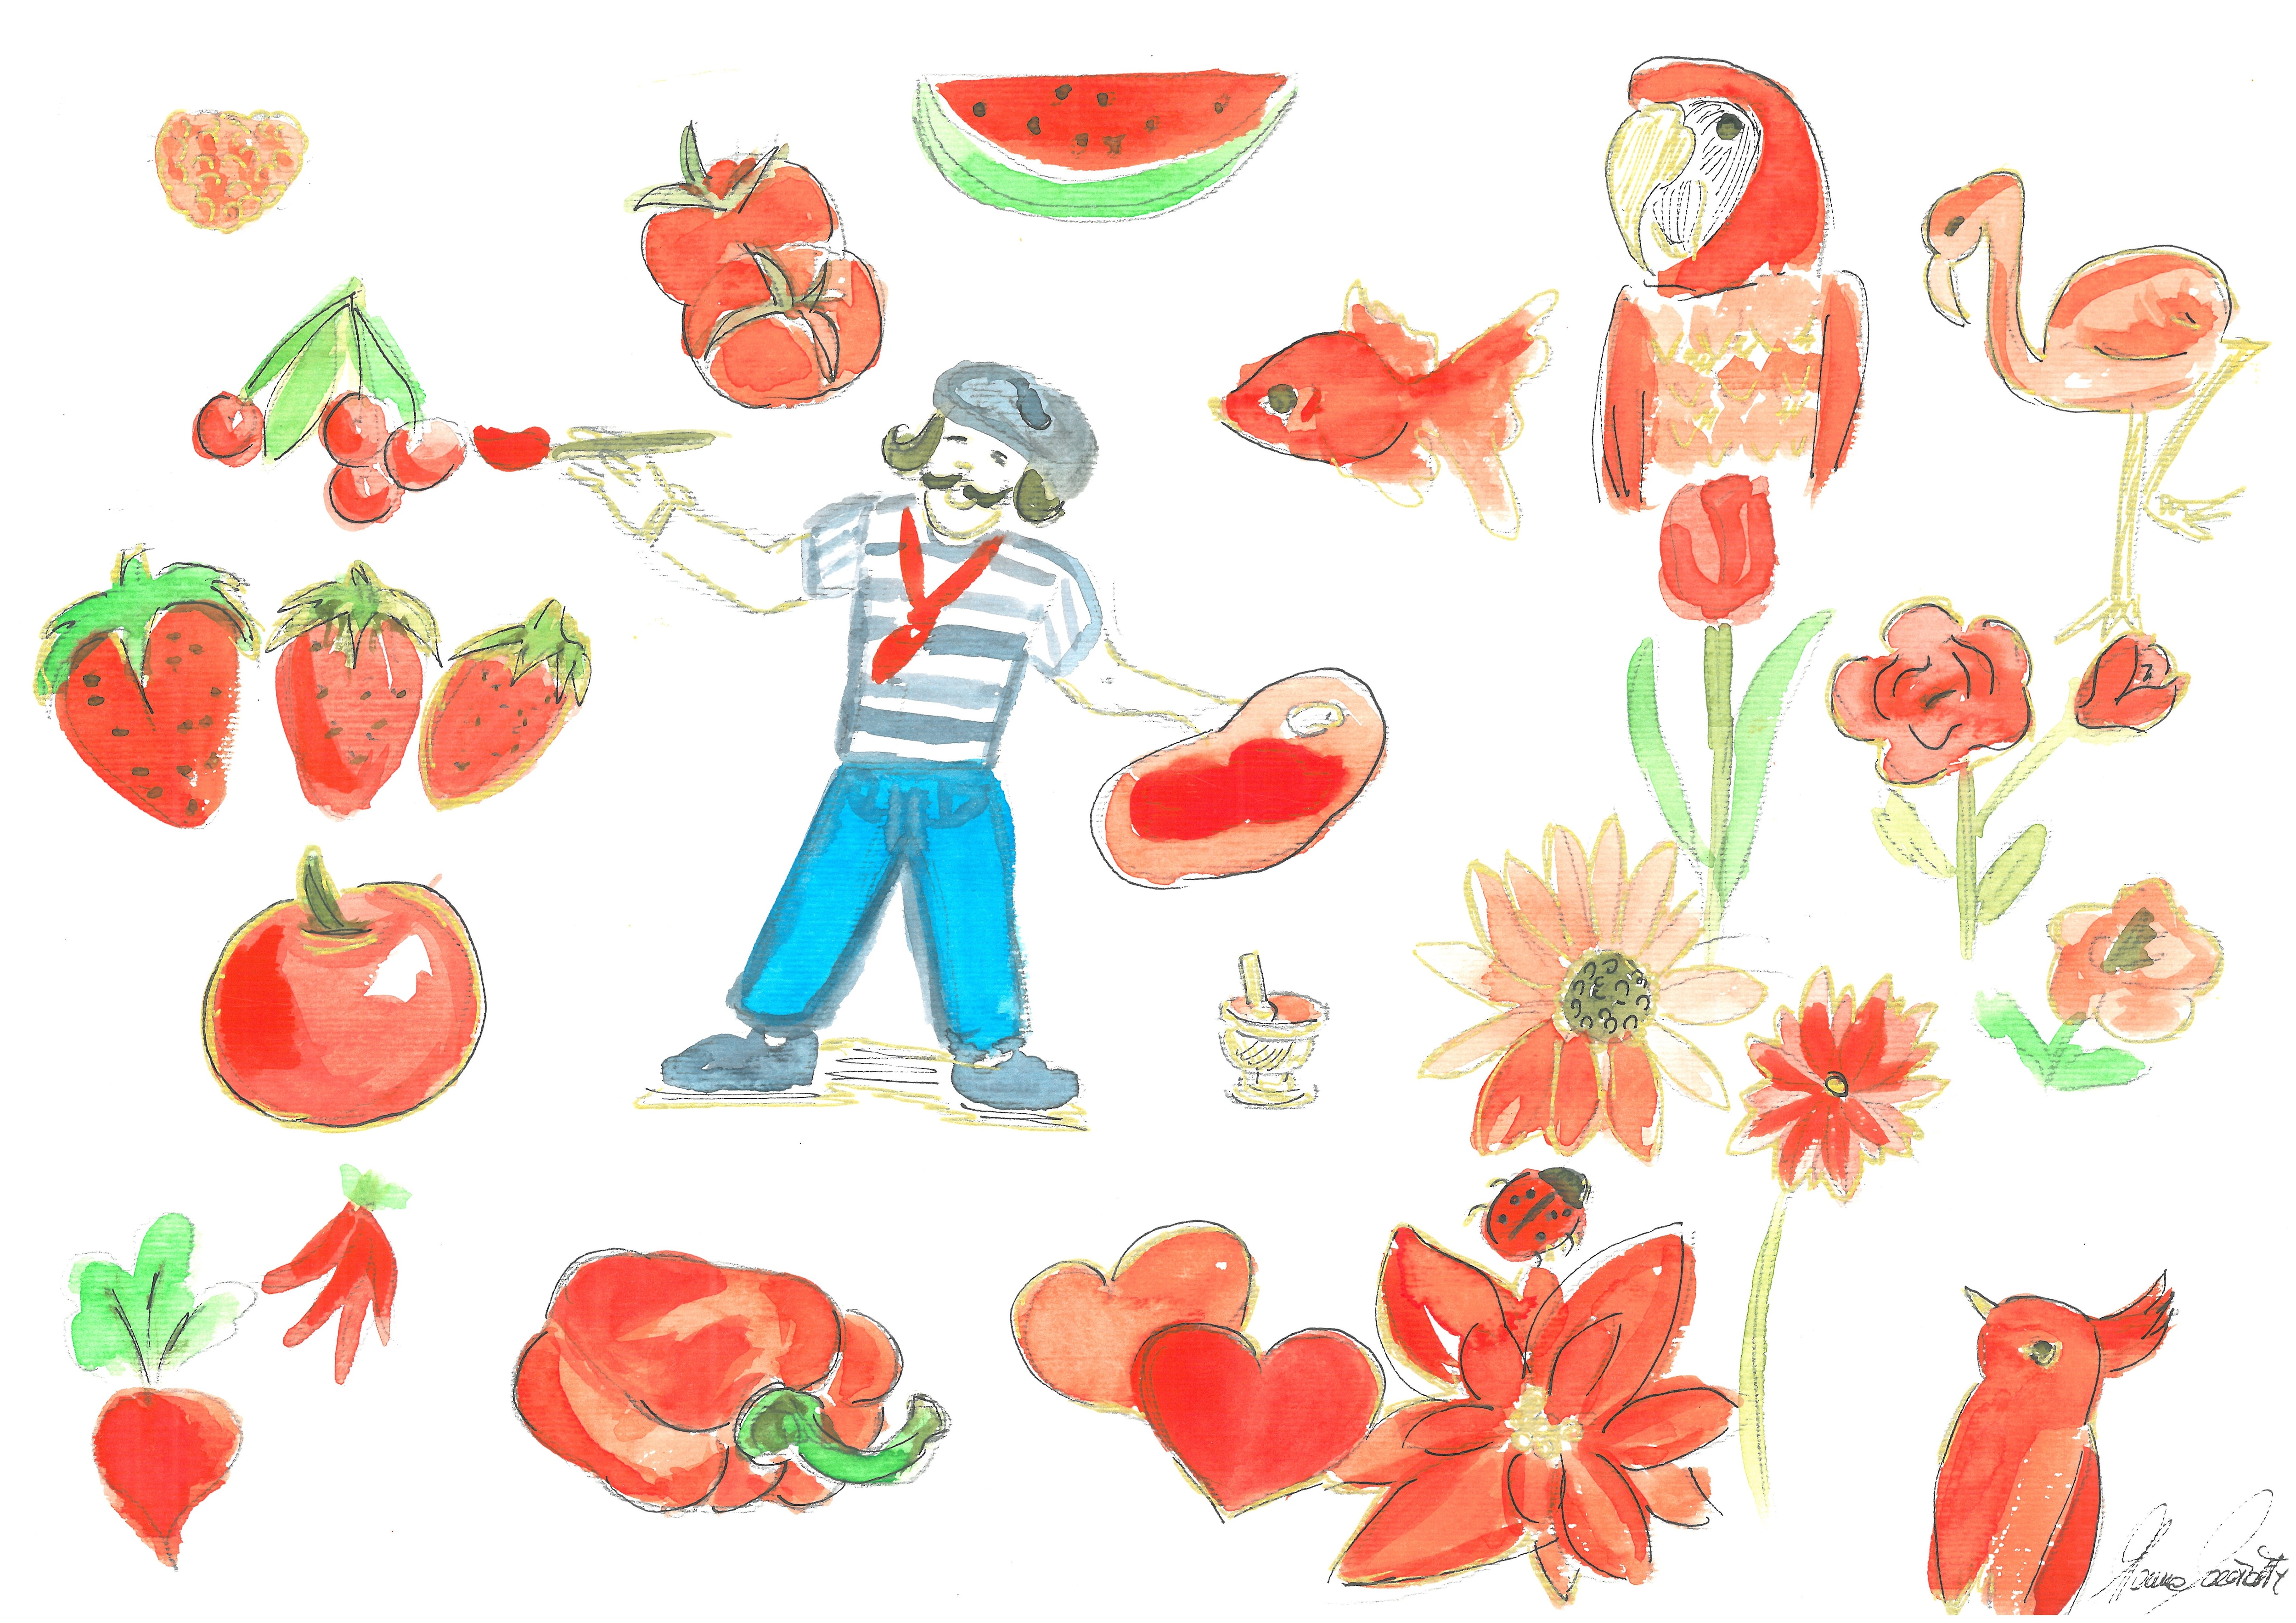 Il pittore Pascal in mezzo ad animali, fiori e frutti rossi.